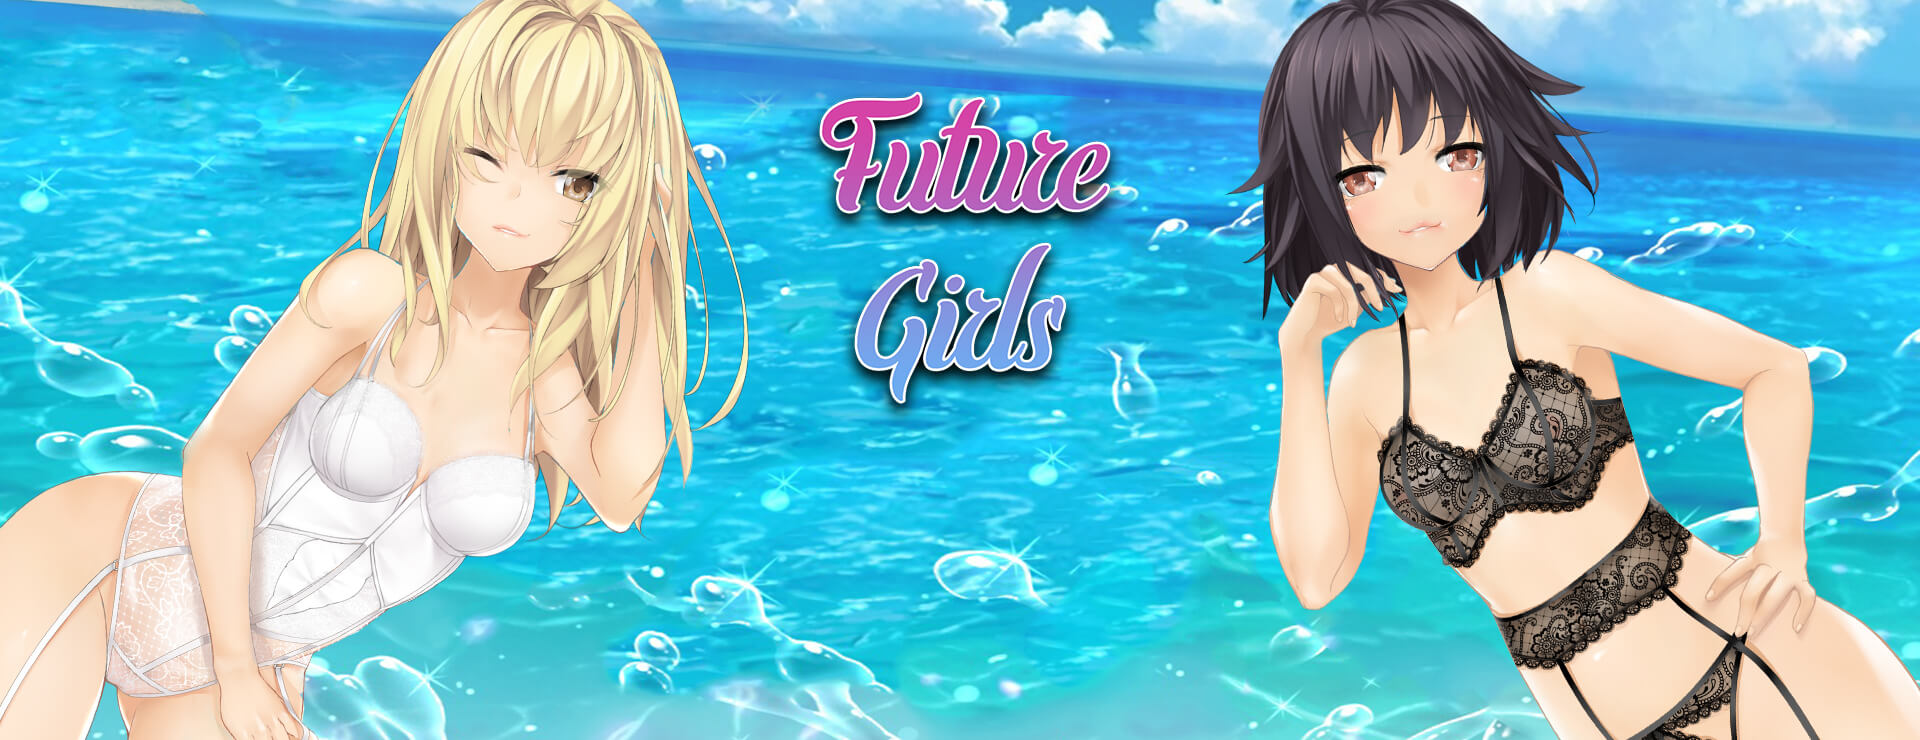 Future Girls - Japanisches Adventure Spiel